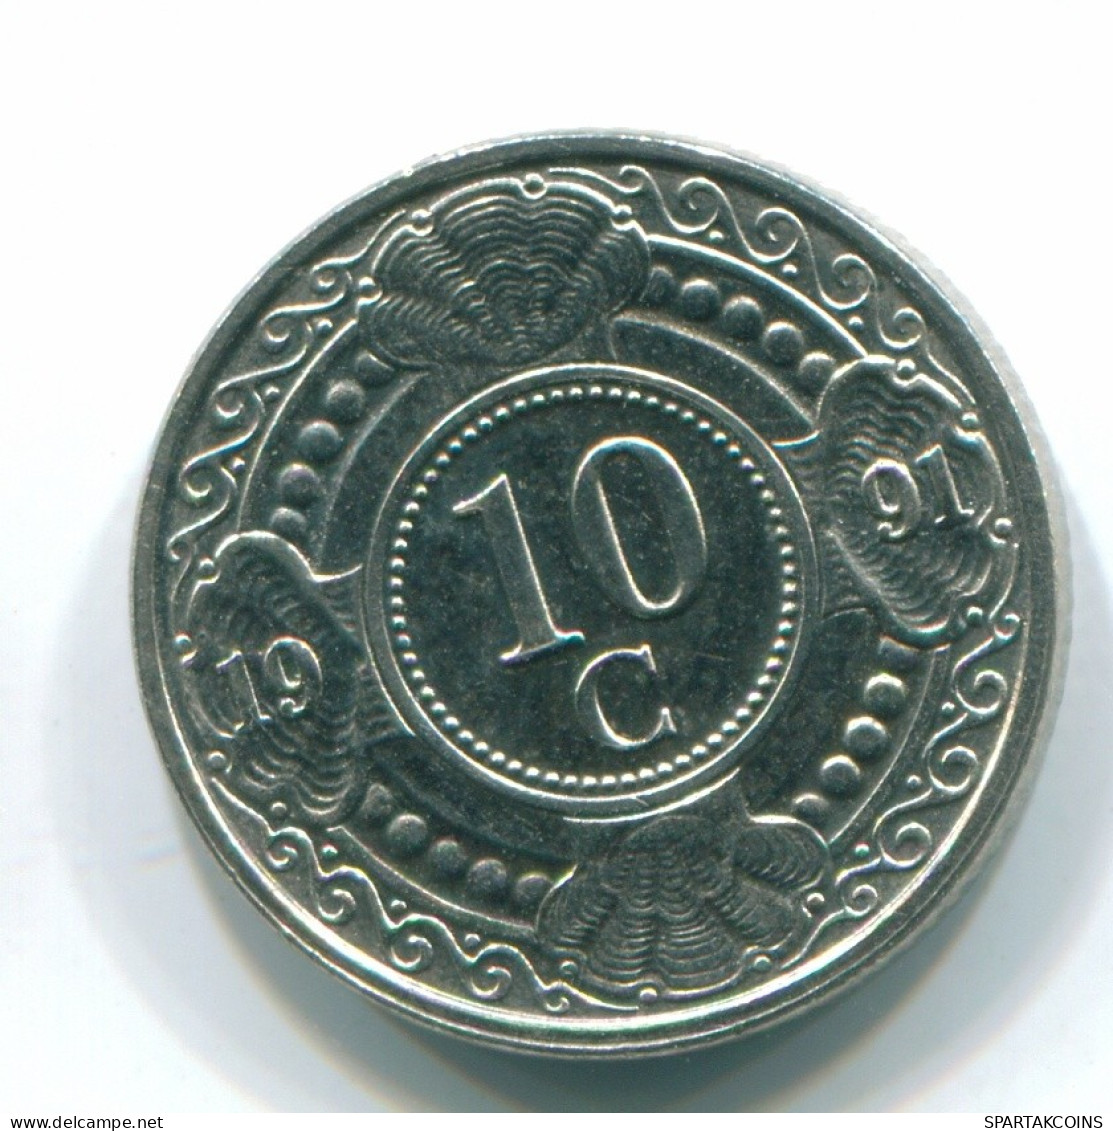 10 CENTS 1991 NETHERLANDS ANTILLES Nickel Colonial Coin #S11340.U.A - Niederländische Antillen